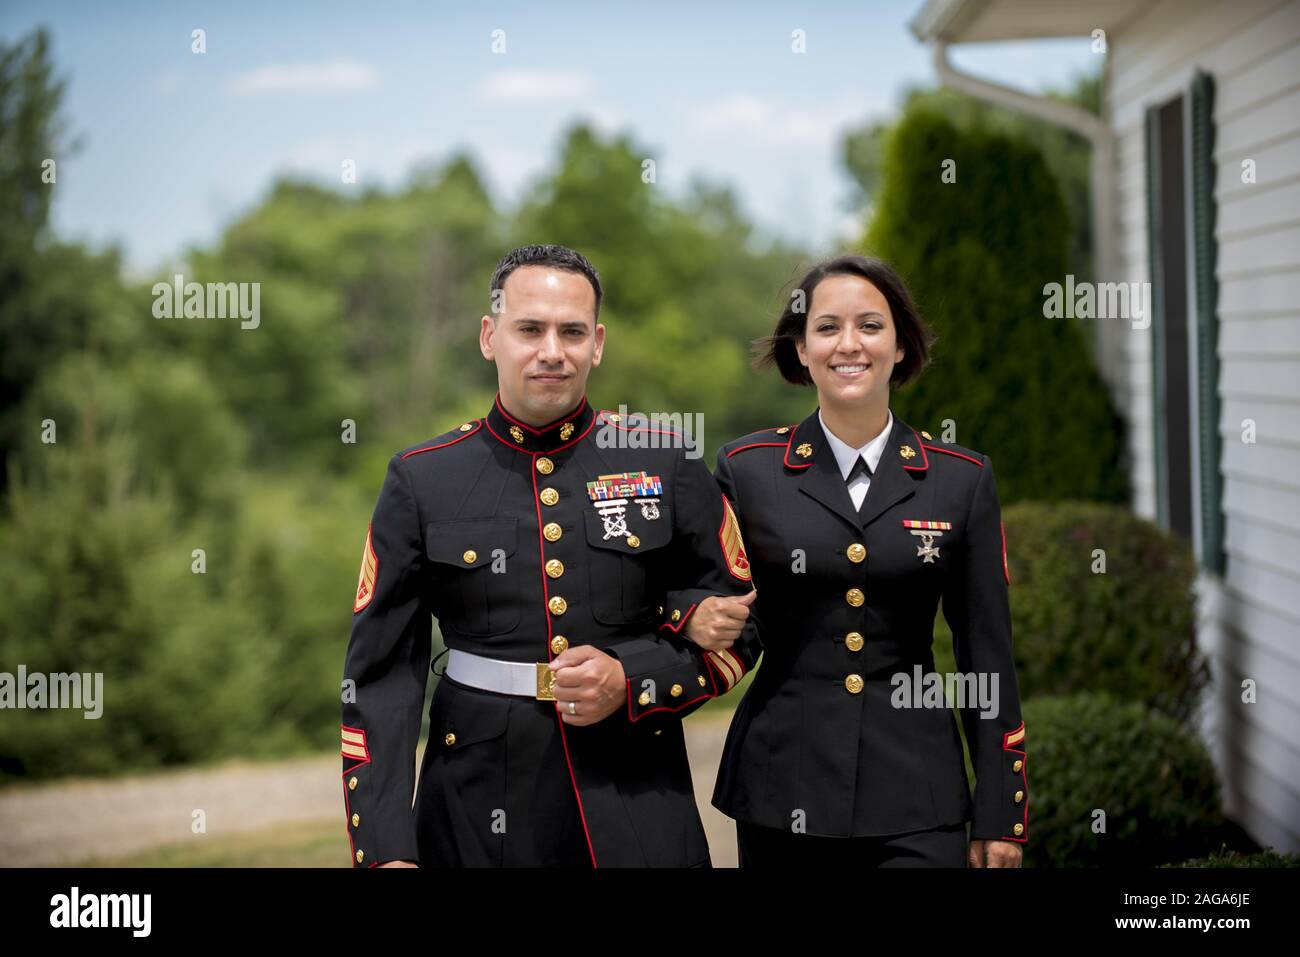 Shallow Focus Aufnahme eines Militärpaares, das die anschaut Kamera Stockfoto